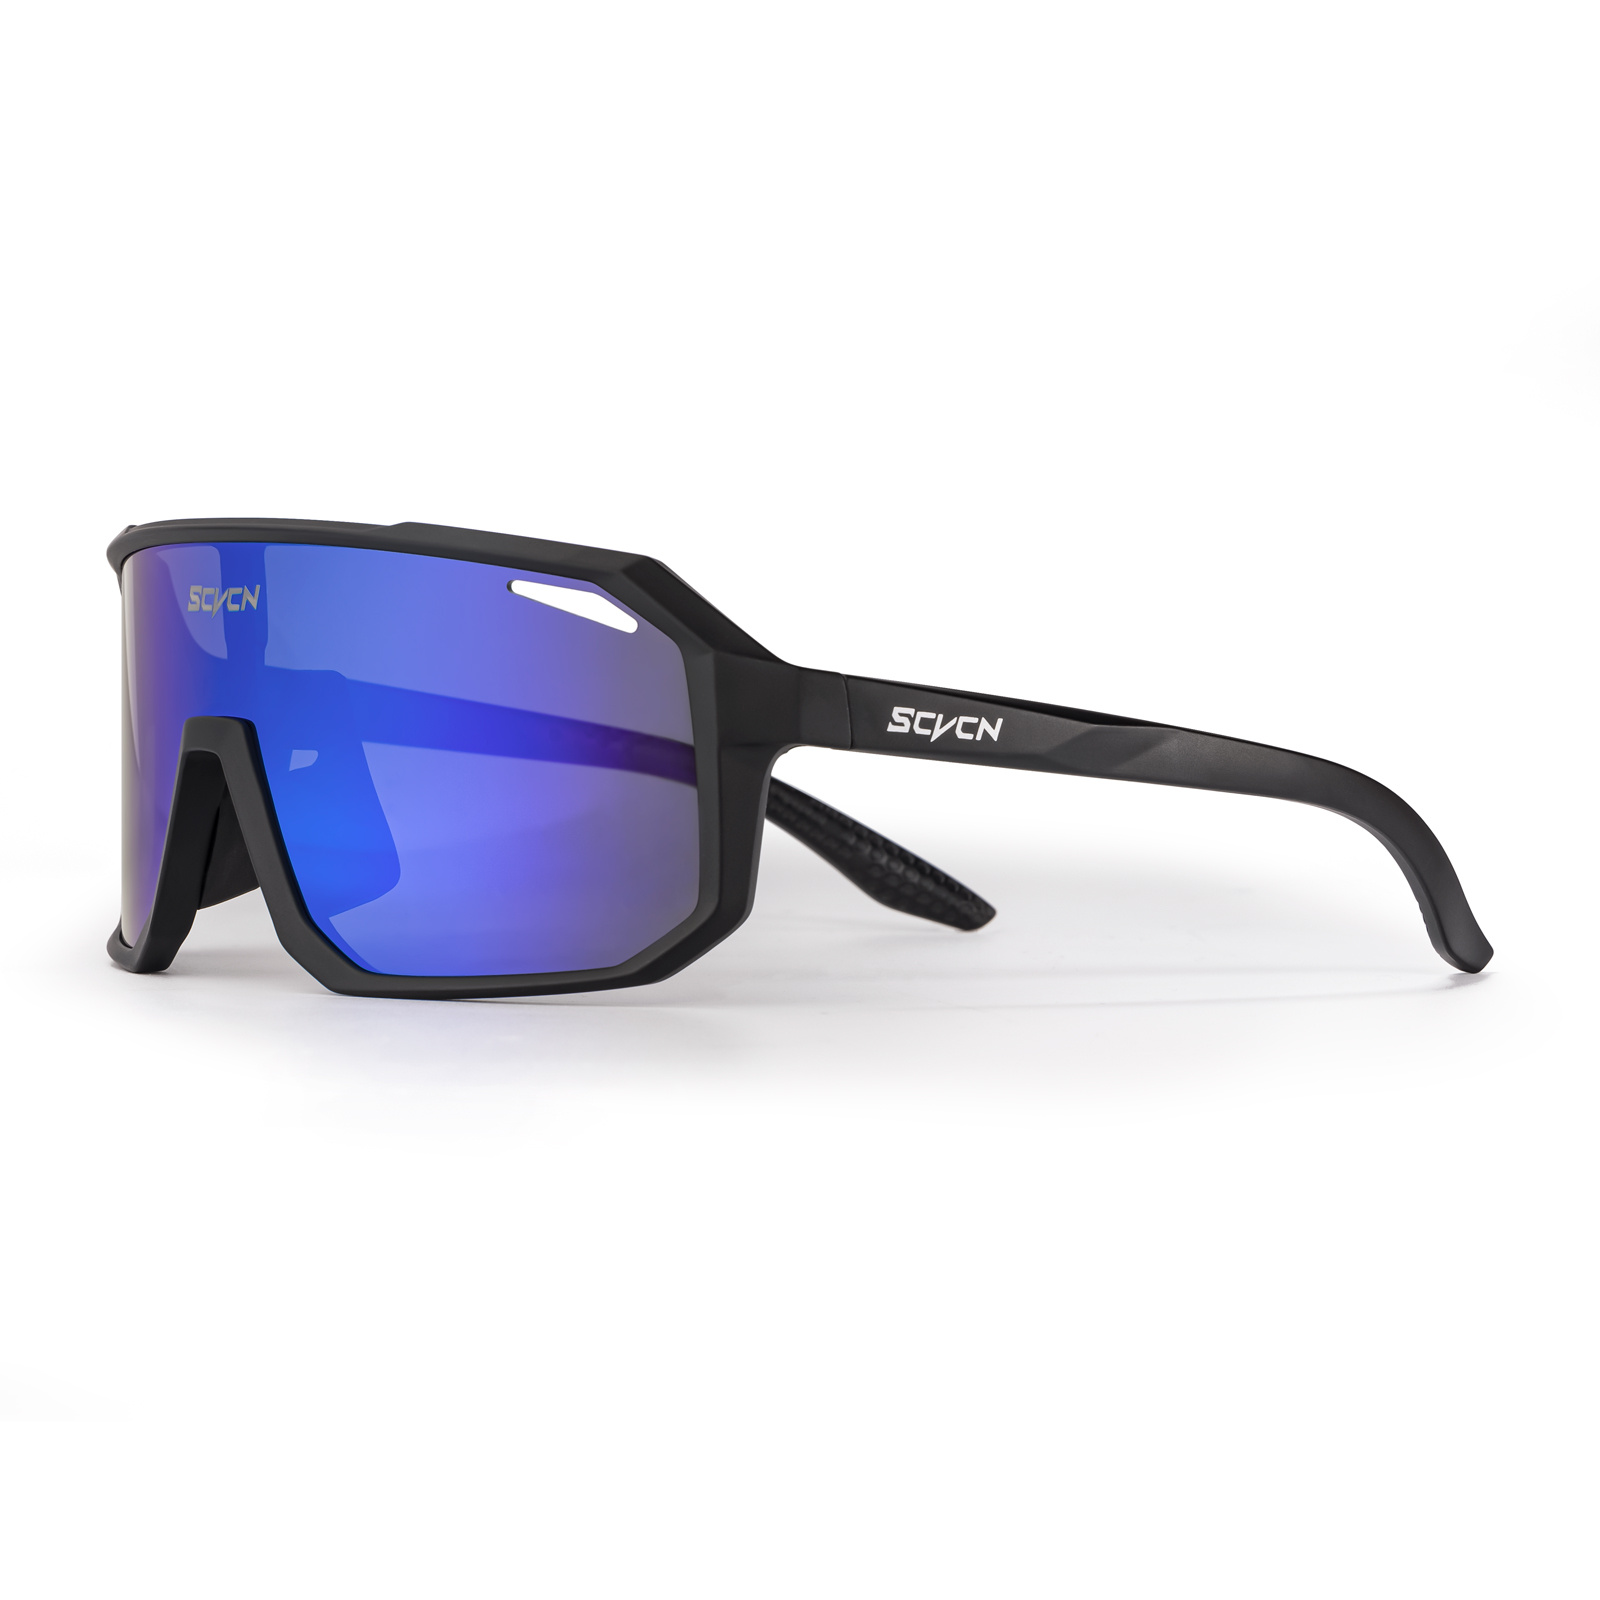 SCVCN,Googles,1 Lens No Box Cycling Sunglasses Outdoor Glasses MTB Men Women Sports Goggles, Safety Glasses UV400 Bicycle Glasses for Outdoor